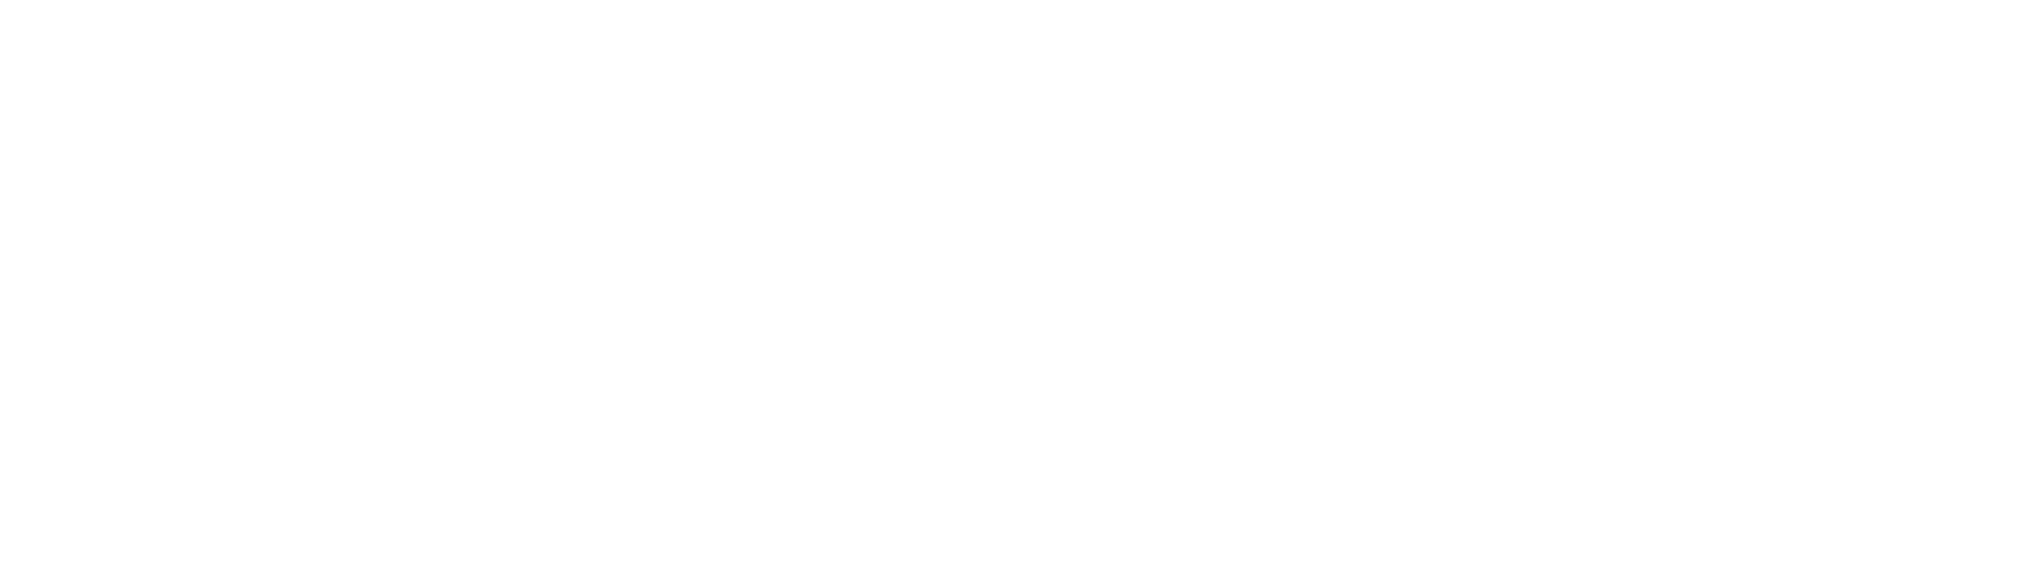 Logo de Foncia